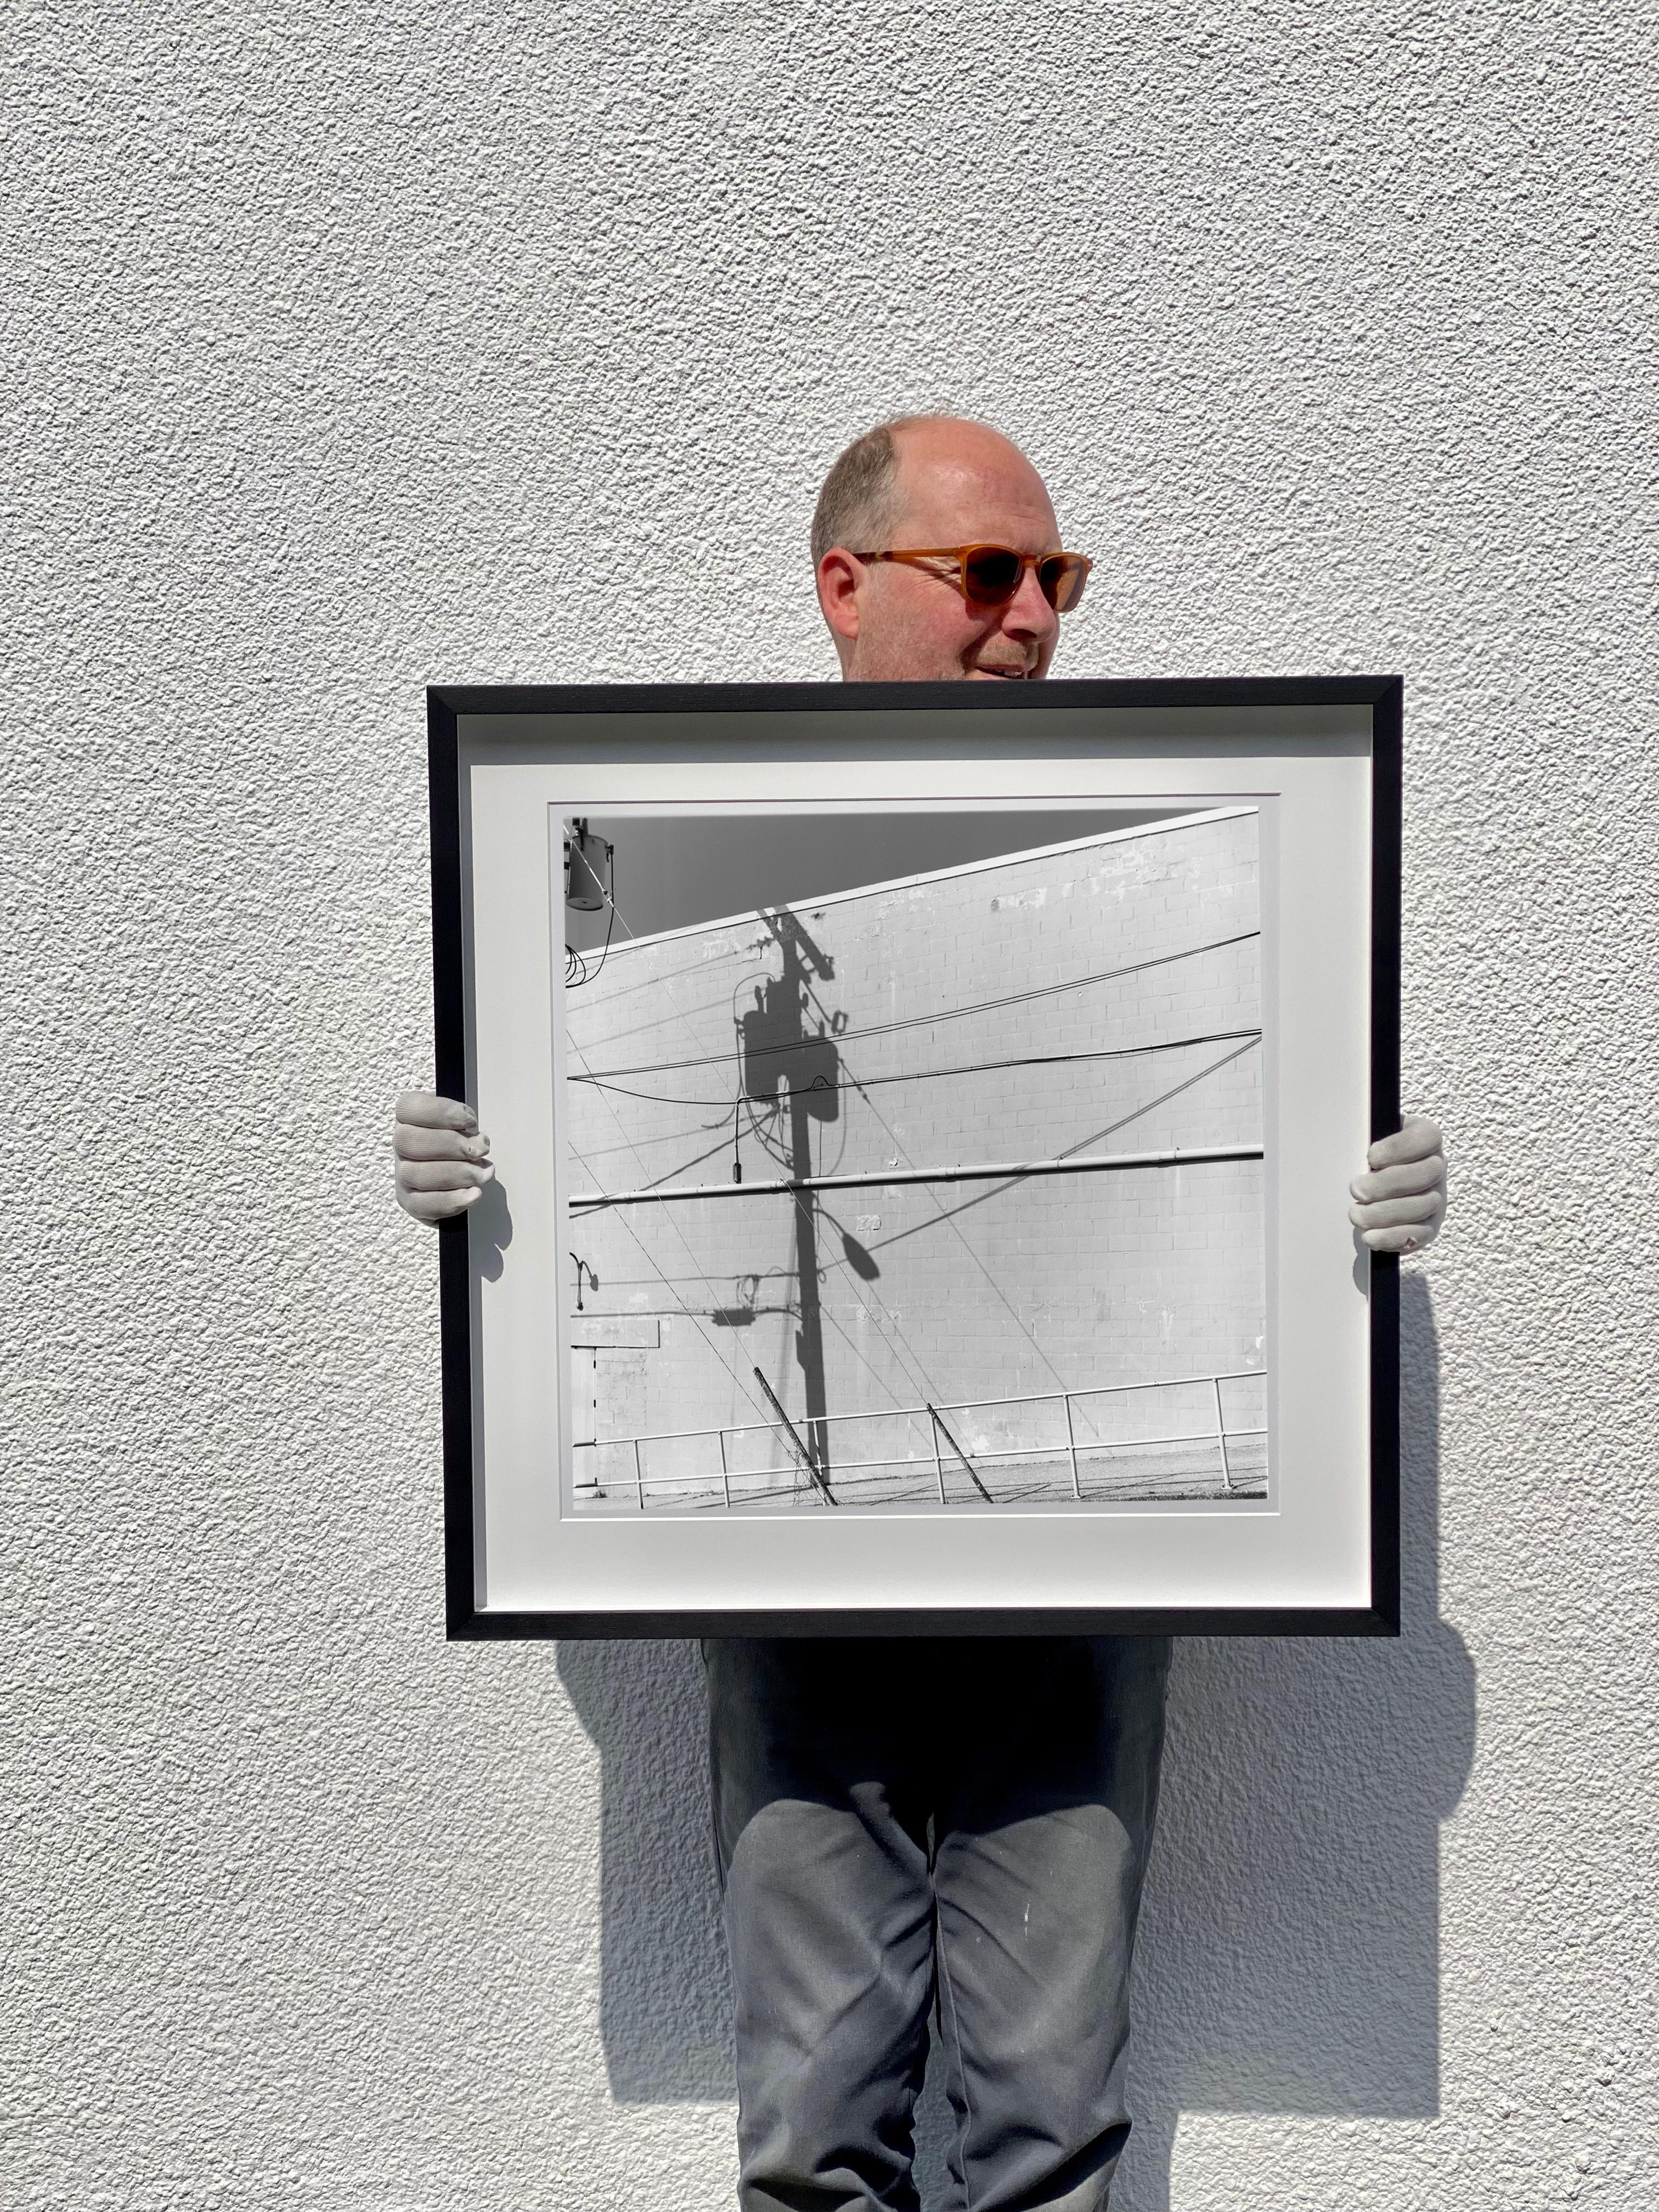 Shadow Lines, Wildwood, New Jersey – amerikanische quadratische Fotografie in Schwarz-Weiß (Grau), Still-Life Photograph, von Richard Heeps